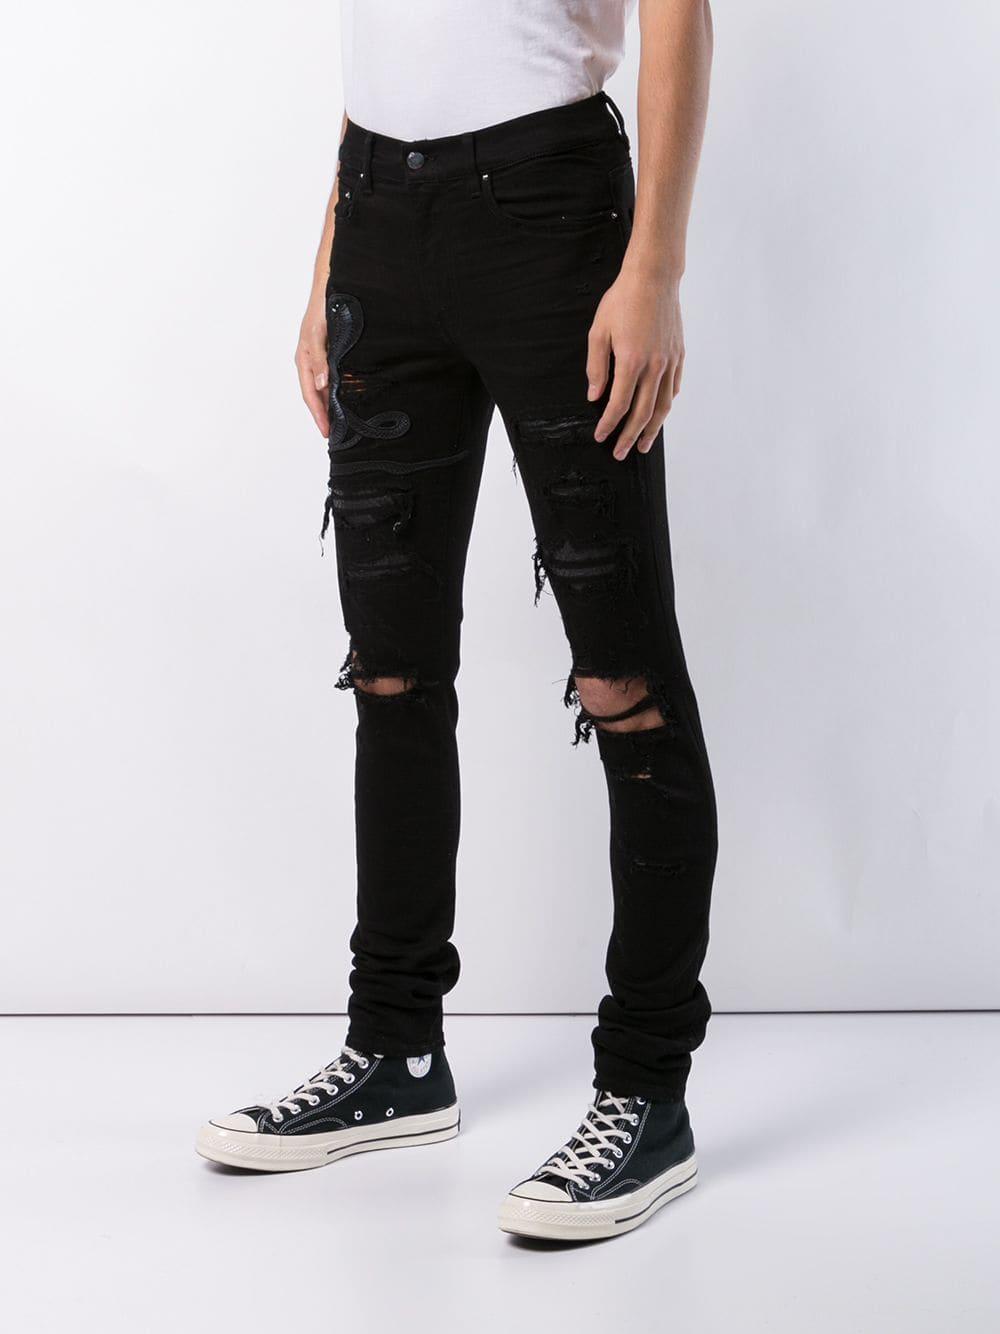 Amiri Denim Art Snake Patch Jeans in Black for Men - Lyst